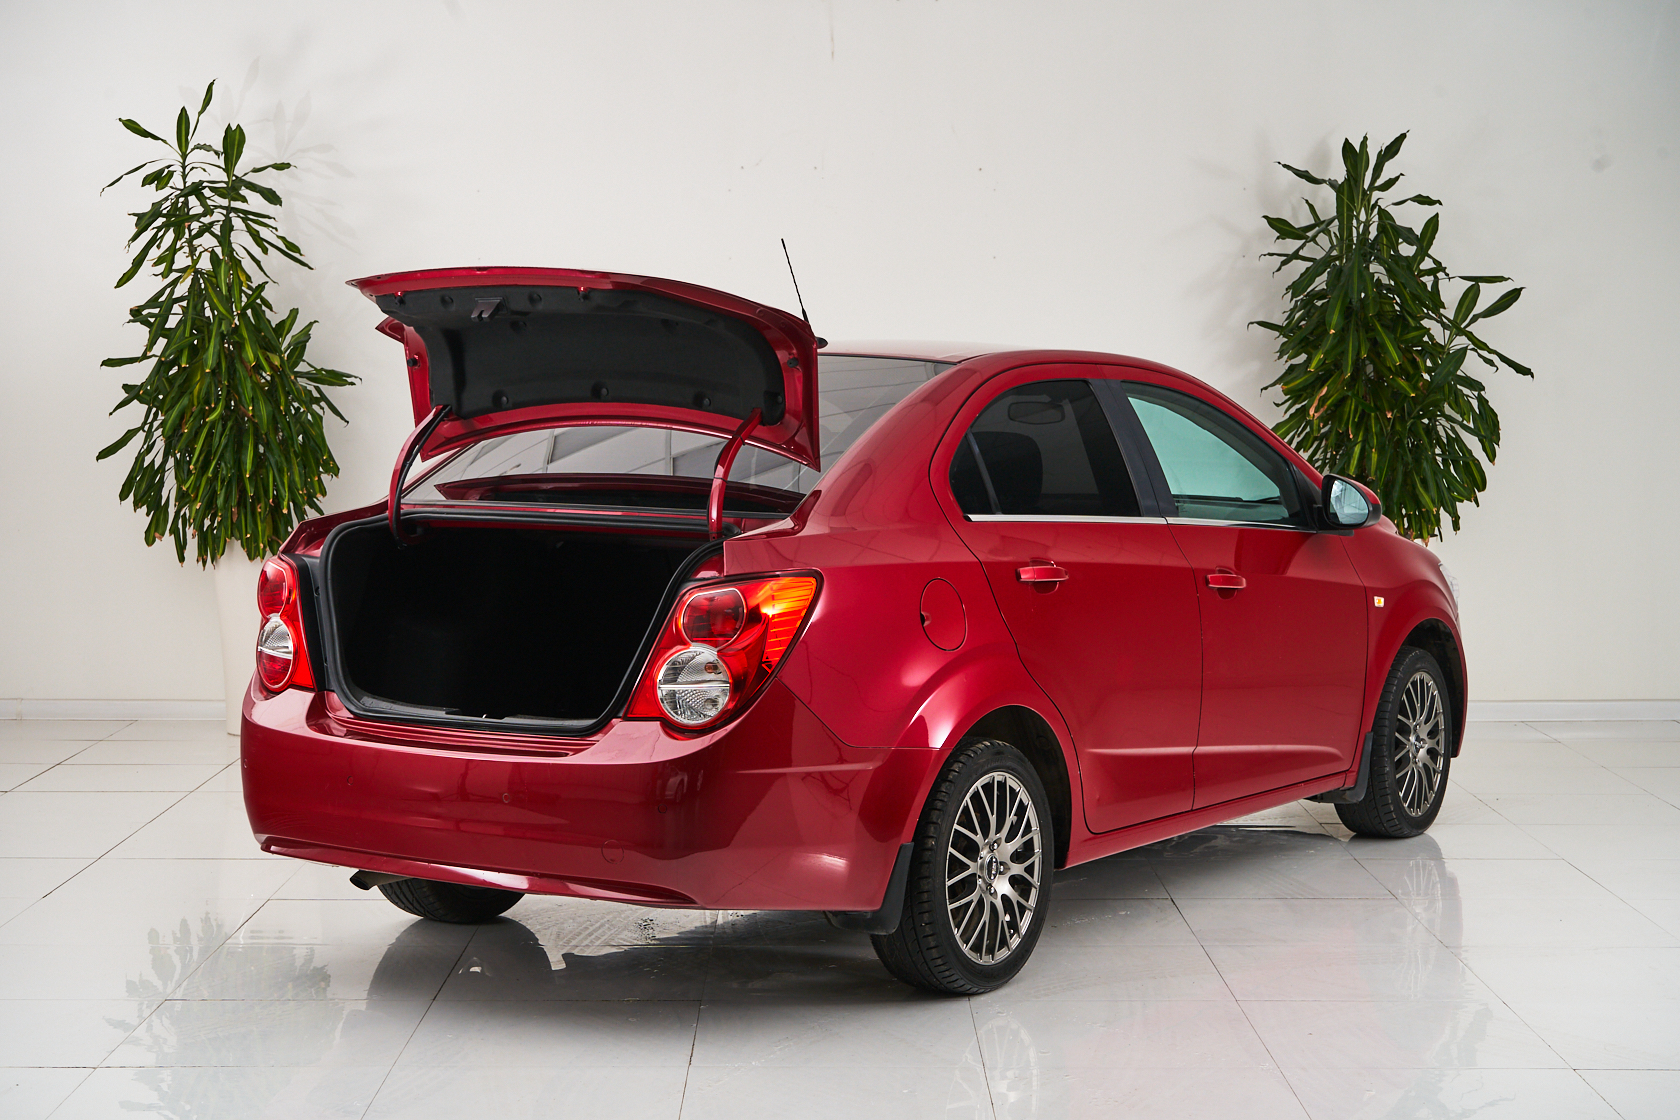 2014 Chevrolet Aveo II №5568757, Красный, 439000 рублей - вид 6